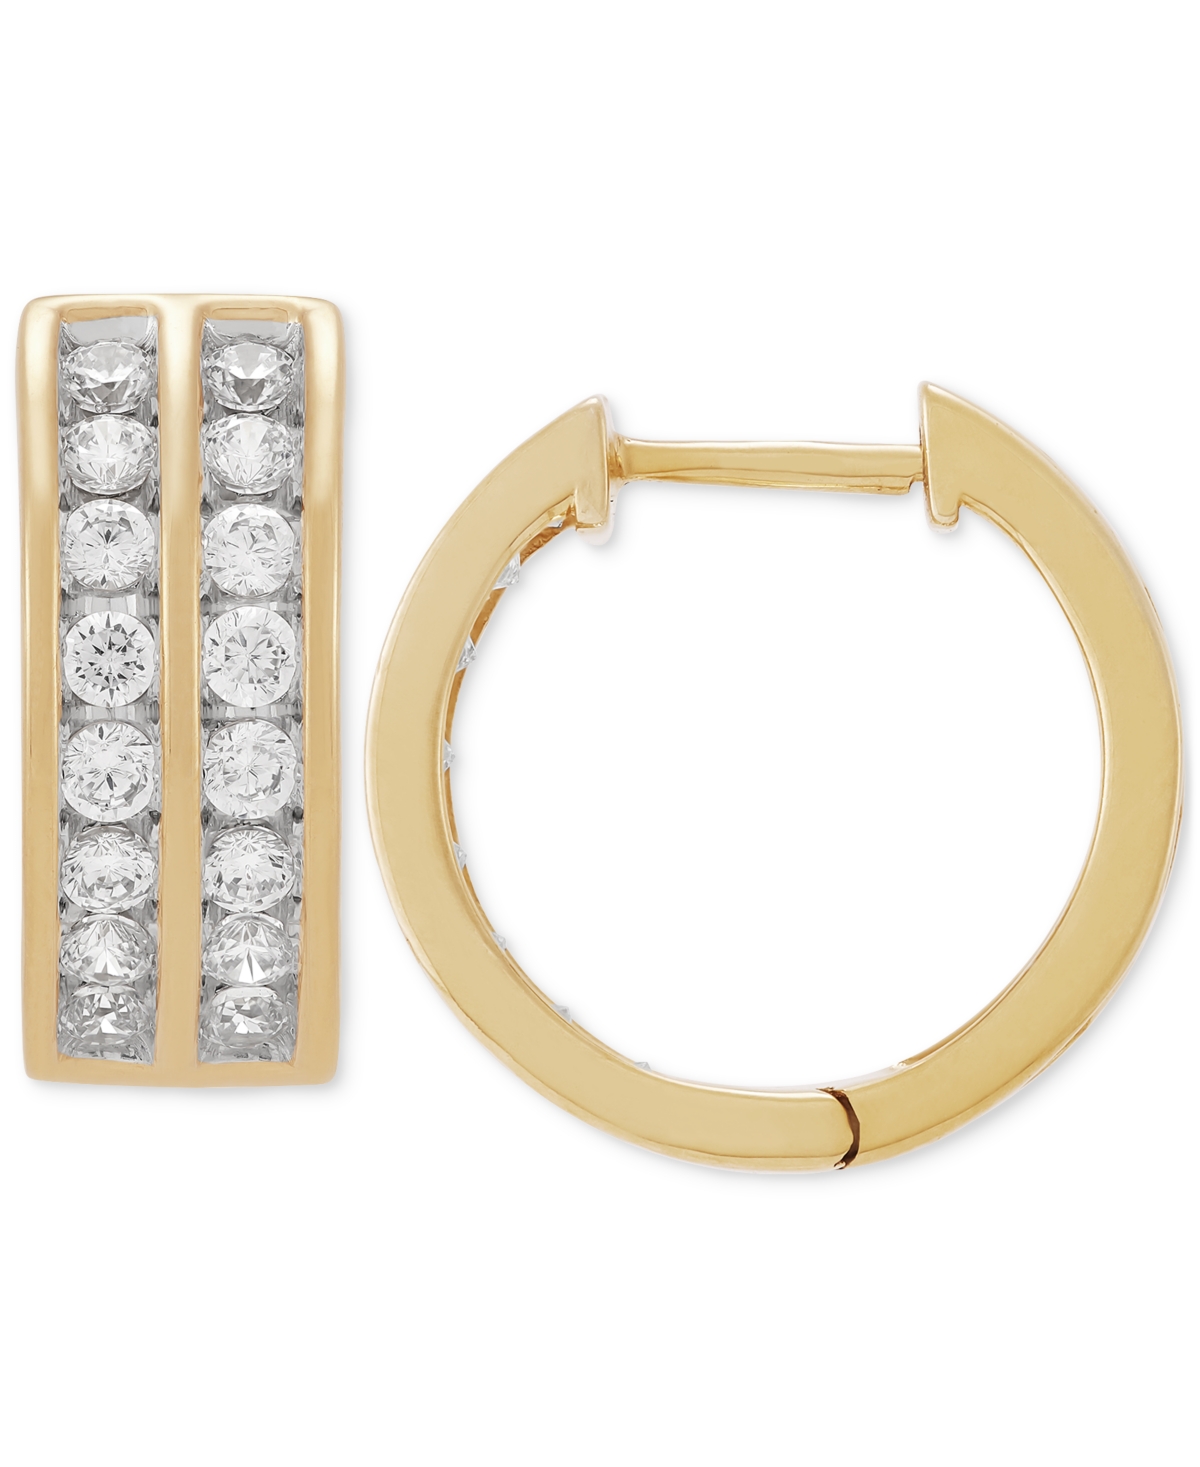 Men's Lab Grown Diamond Channel-Set Small Hoop Earrings (1 ct. t.w.) in 10k Gold, 15mm - Yellow Gold